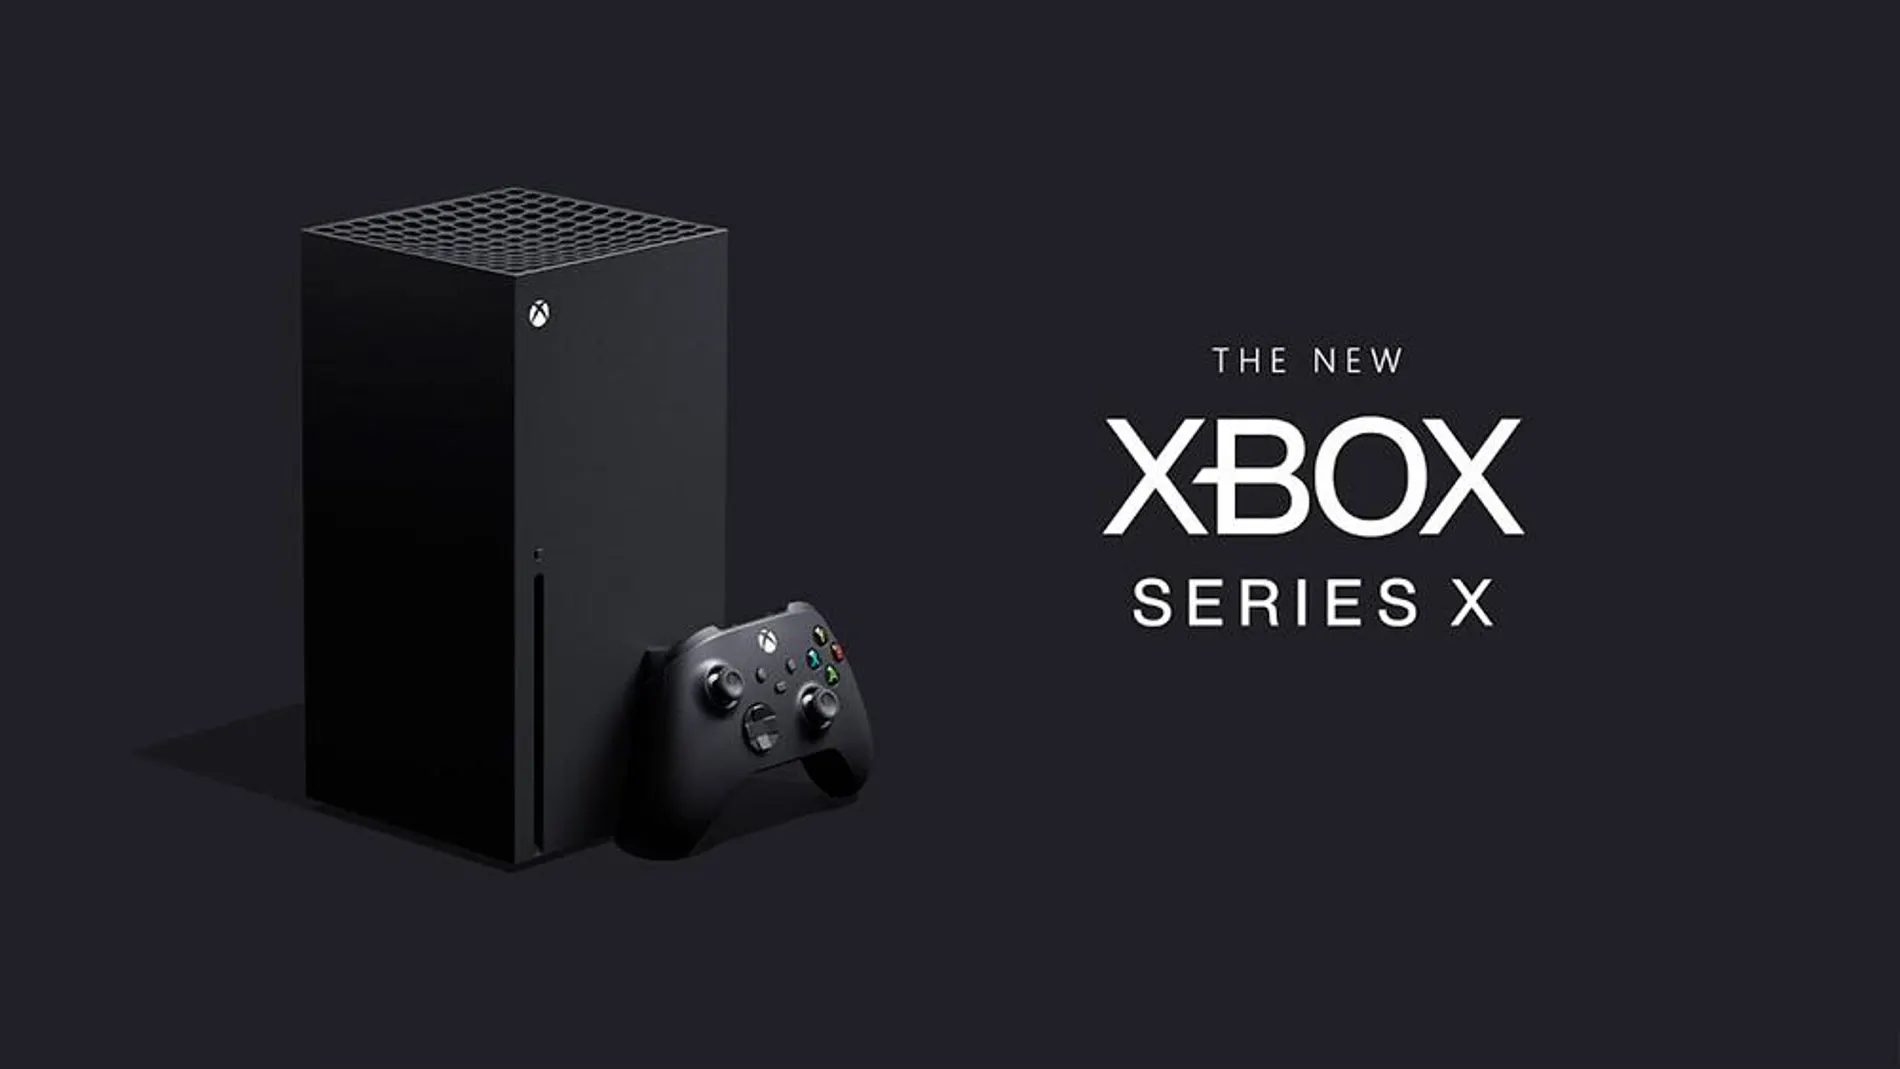 Cabina Obligar pasos Las principales características de Xbox Series X al descubierto